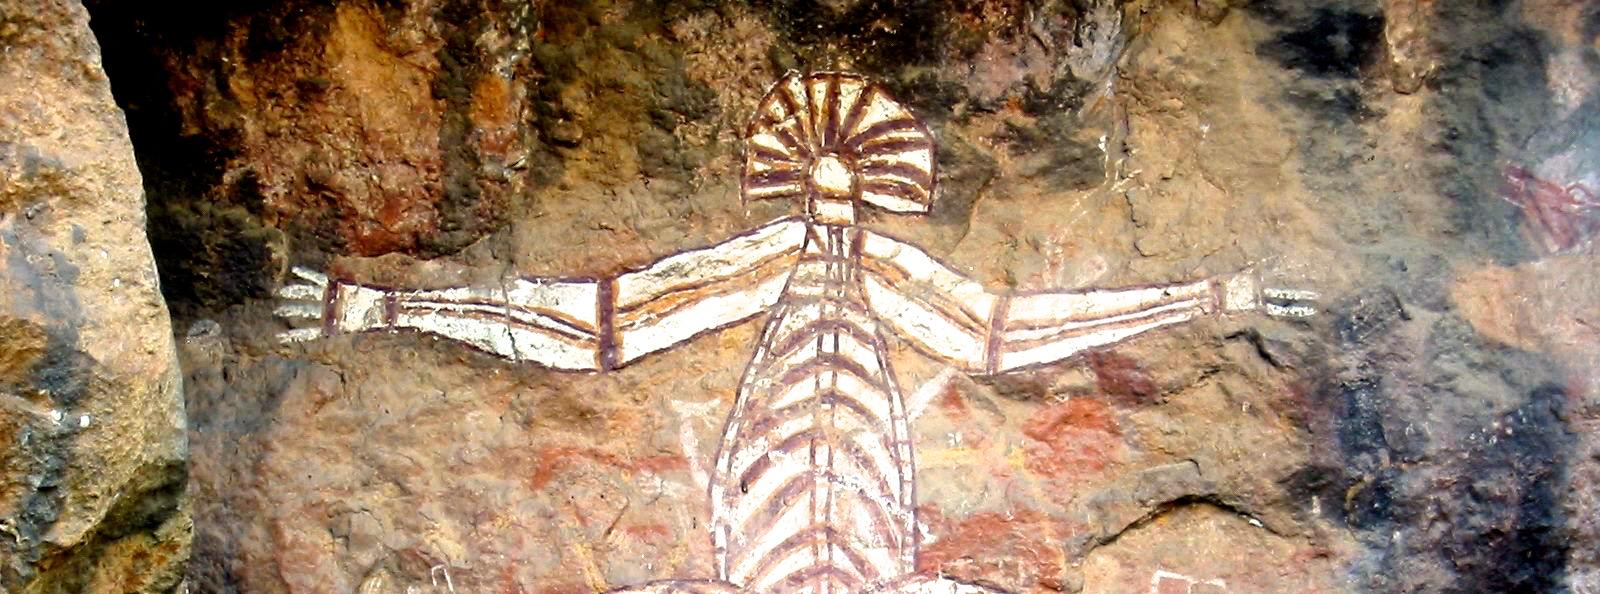 Kakadu Ancient Rock Art